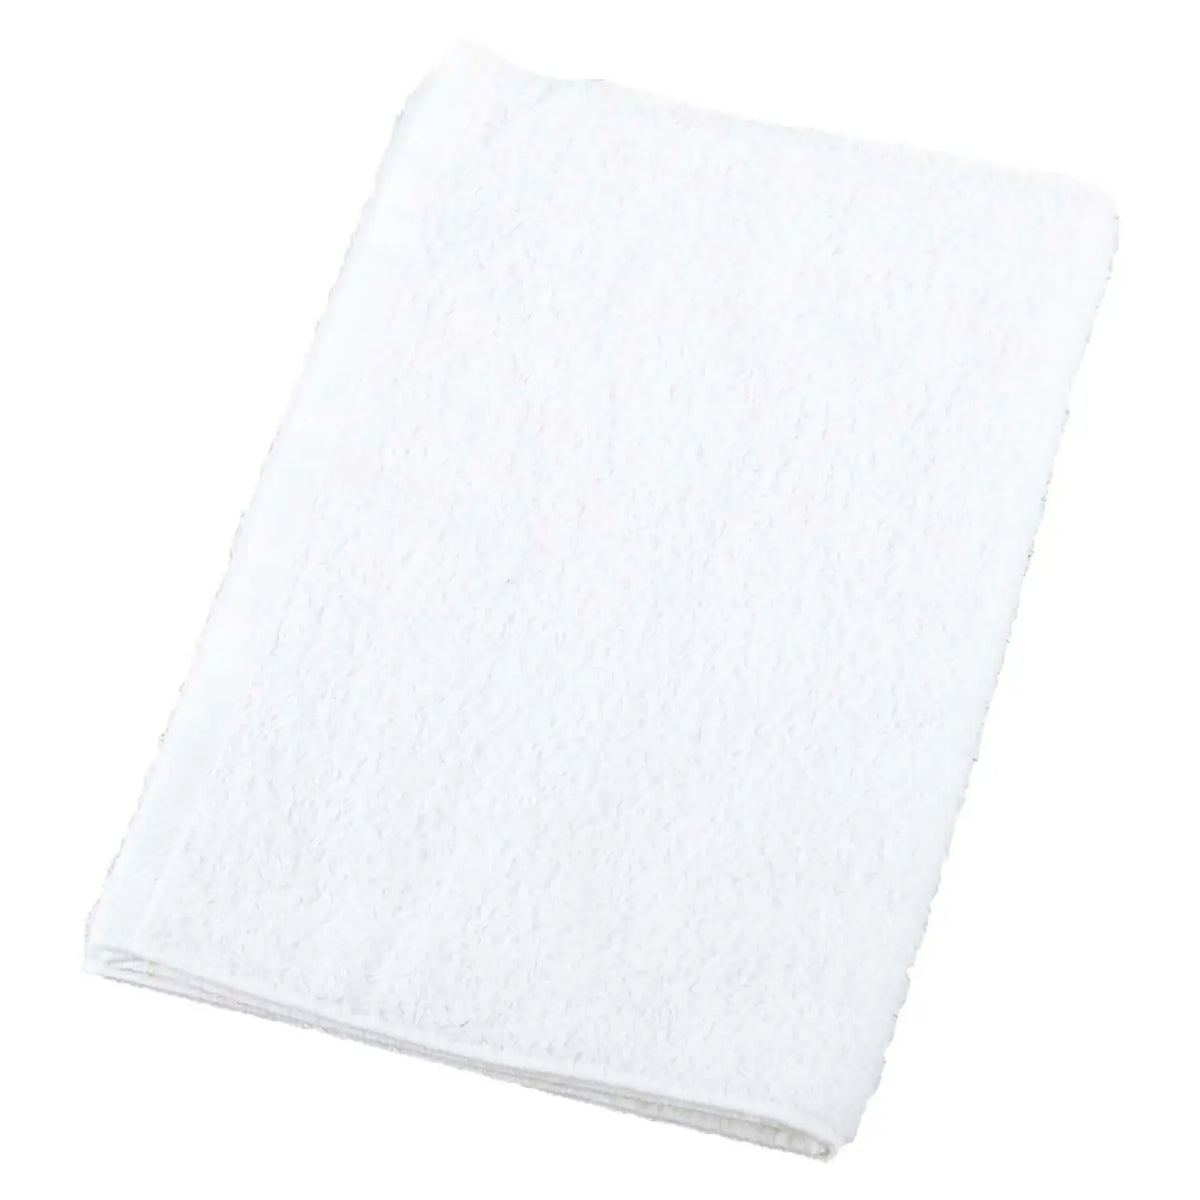 μ-func. Cotton Antibacterial Face Towel 340x850mm 12 pcs